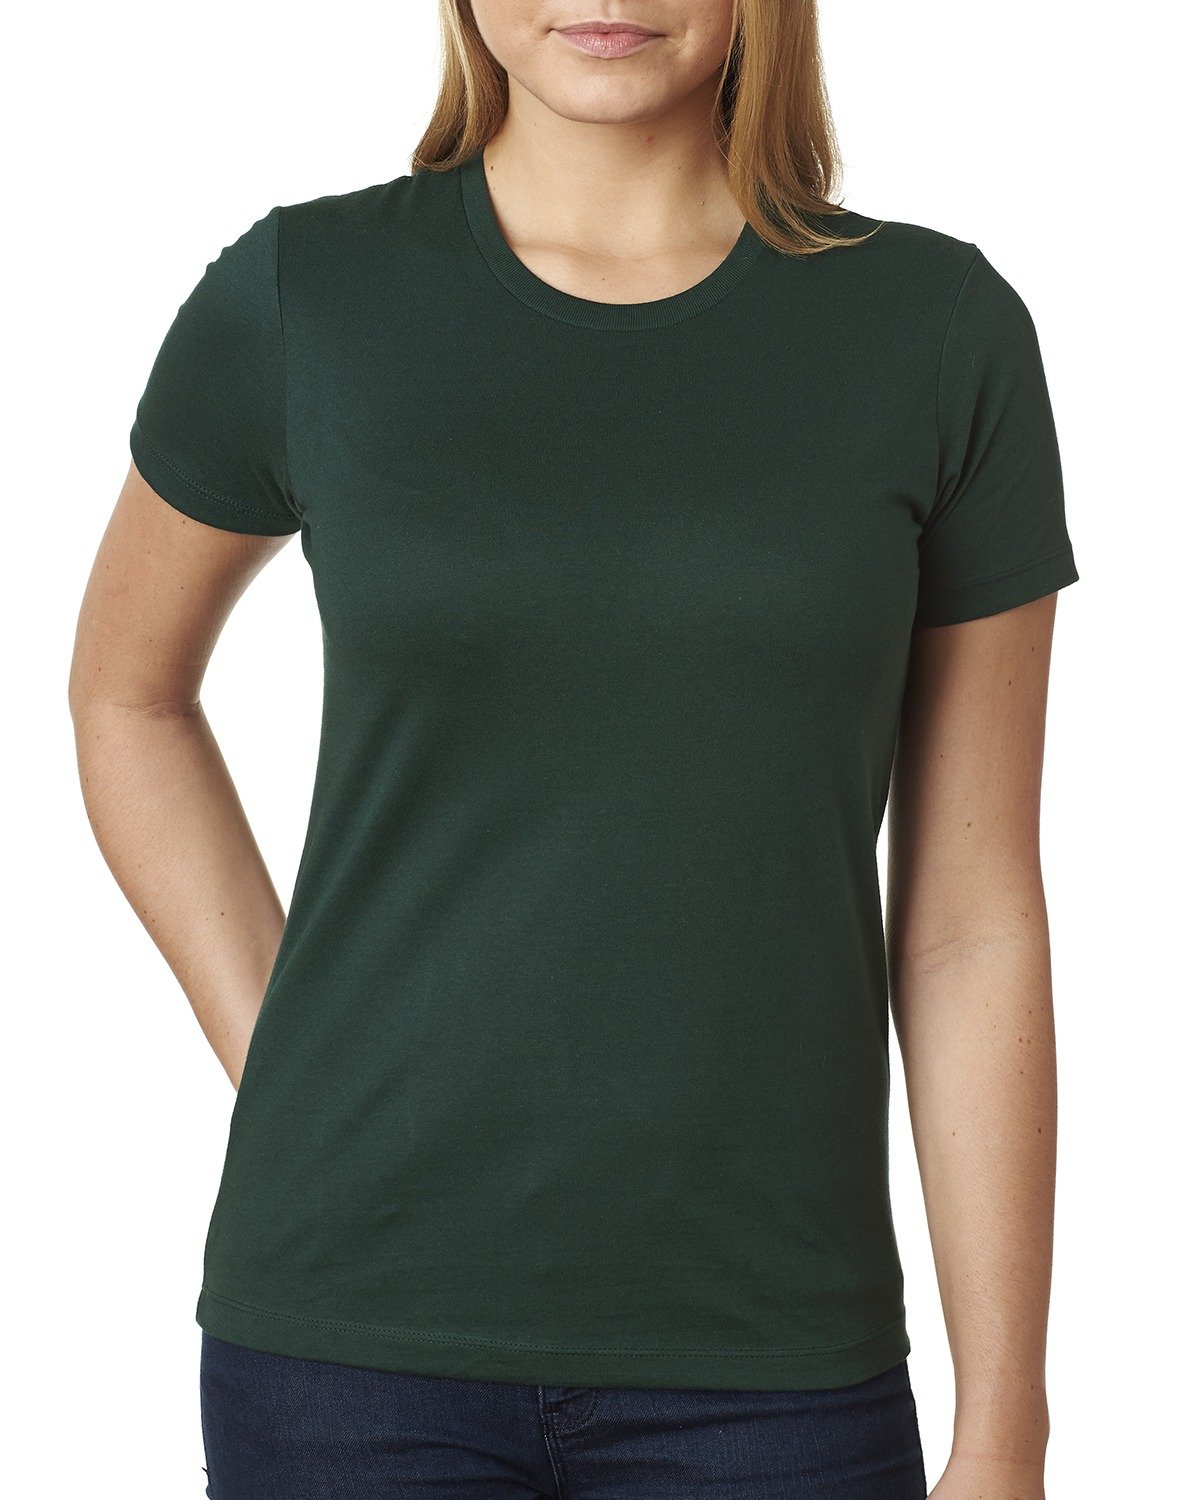 Next Level Apparel Ladies' Boyfriend T-Shirt FOREST GREEN 